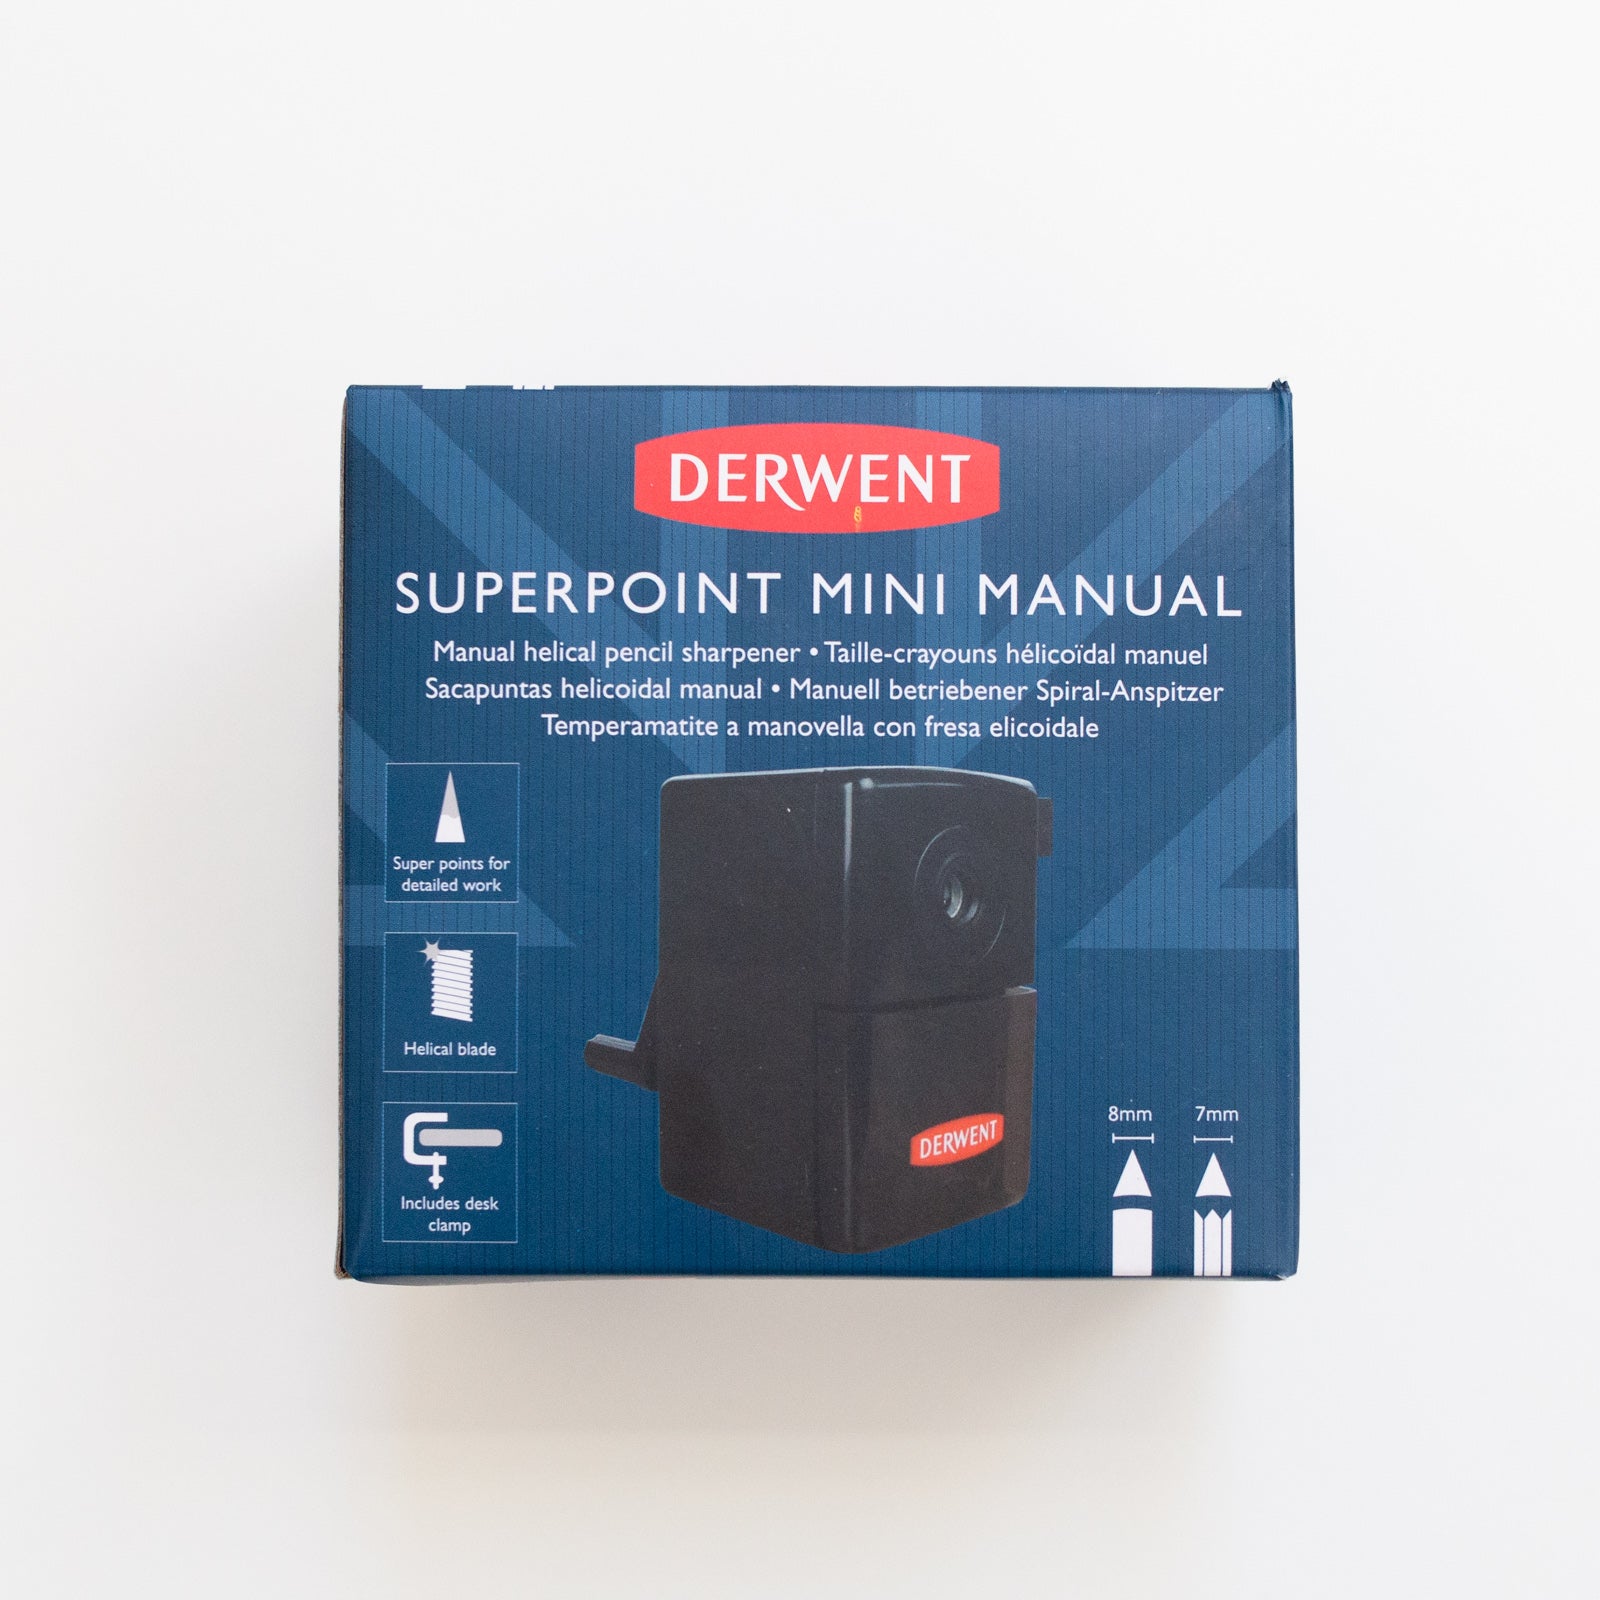 Derwent Superpoint mini manual